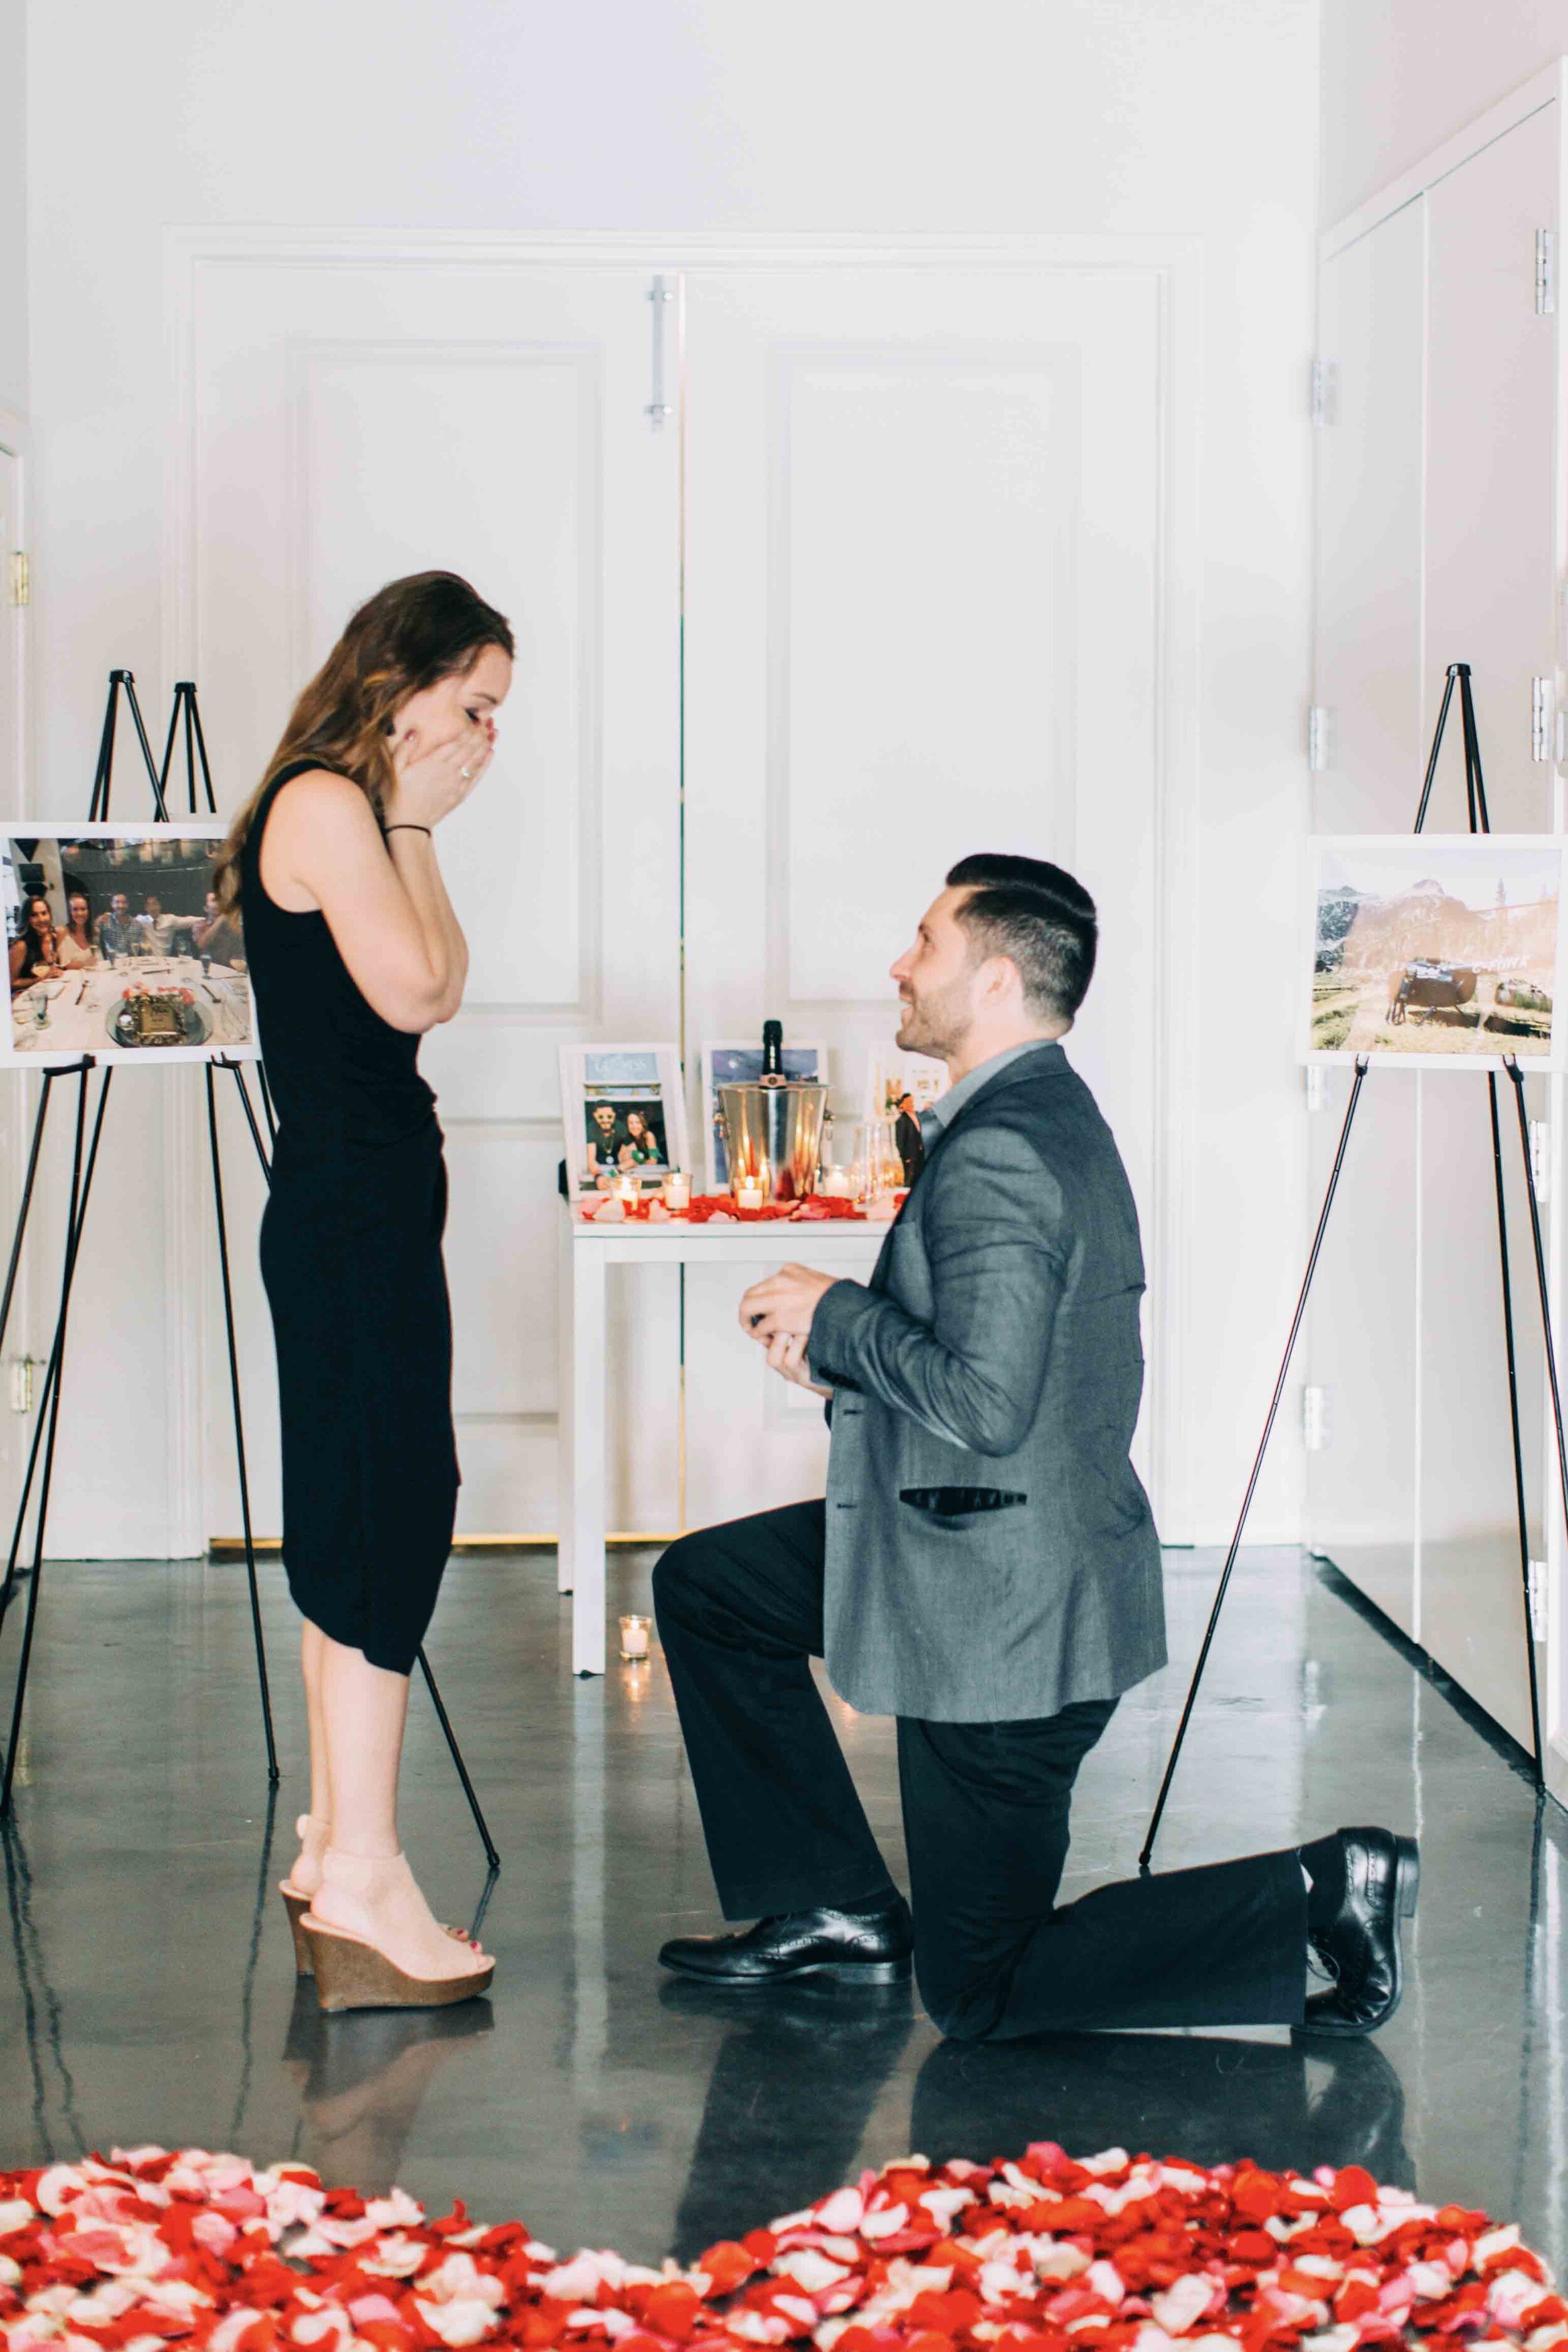 Atlanta Proposal surprise as groom gets on one knee